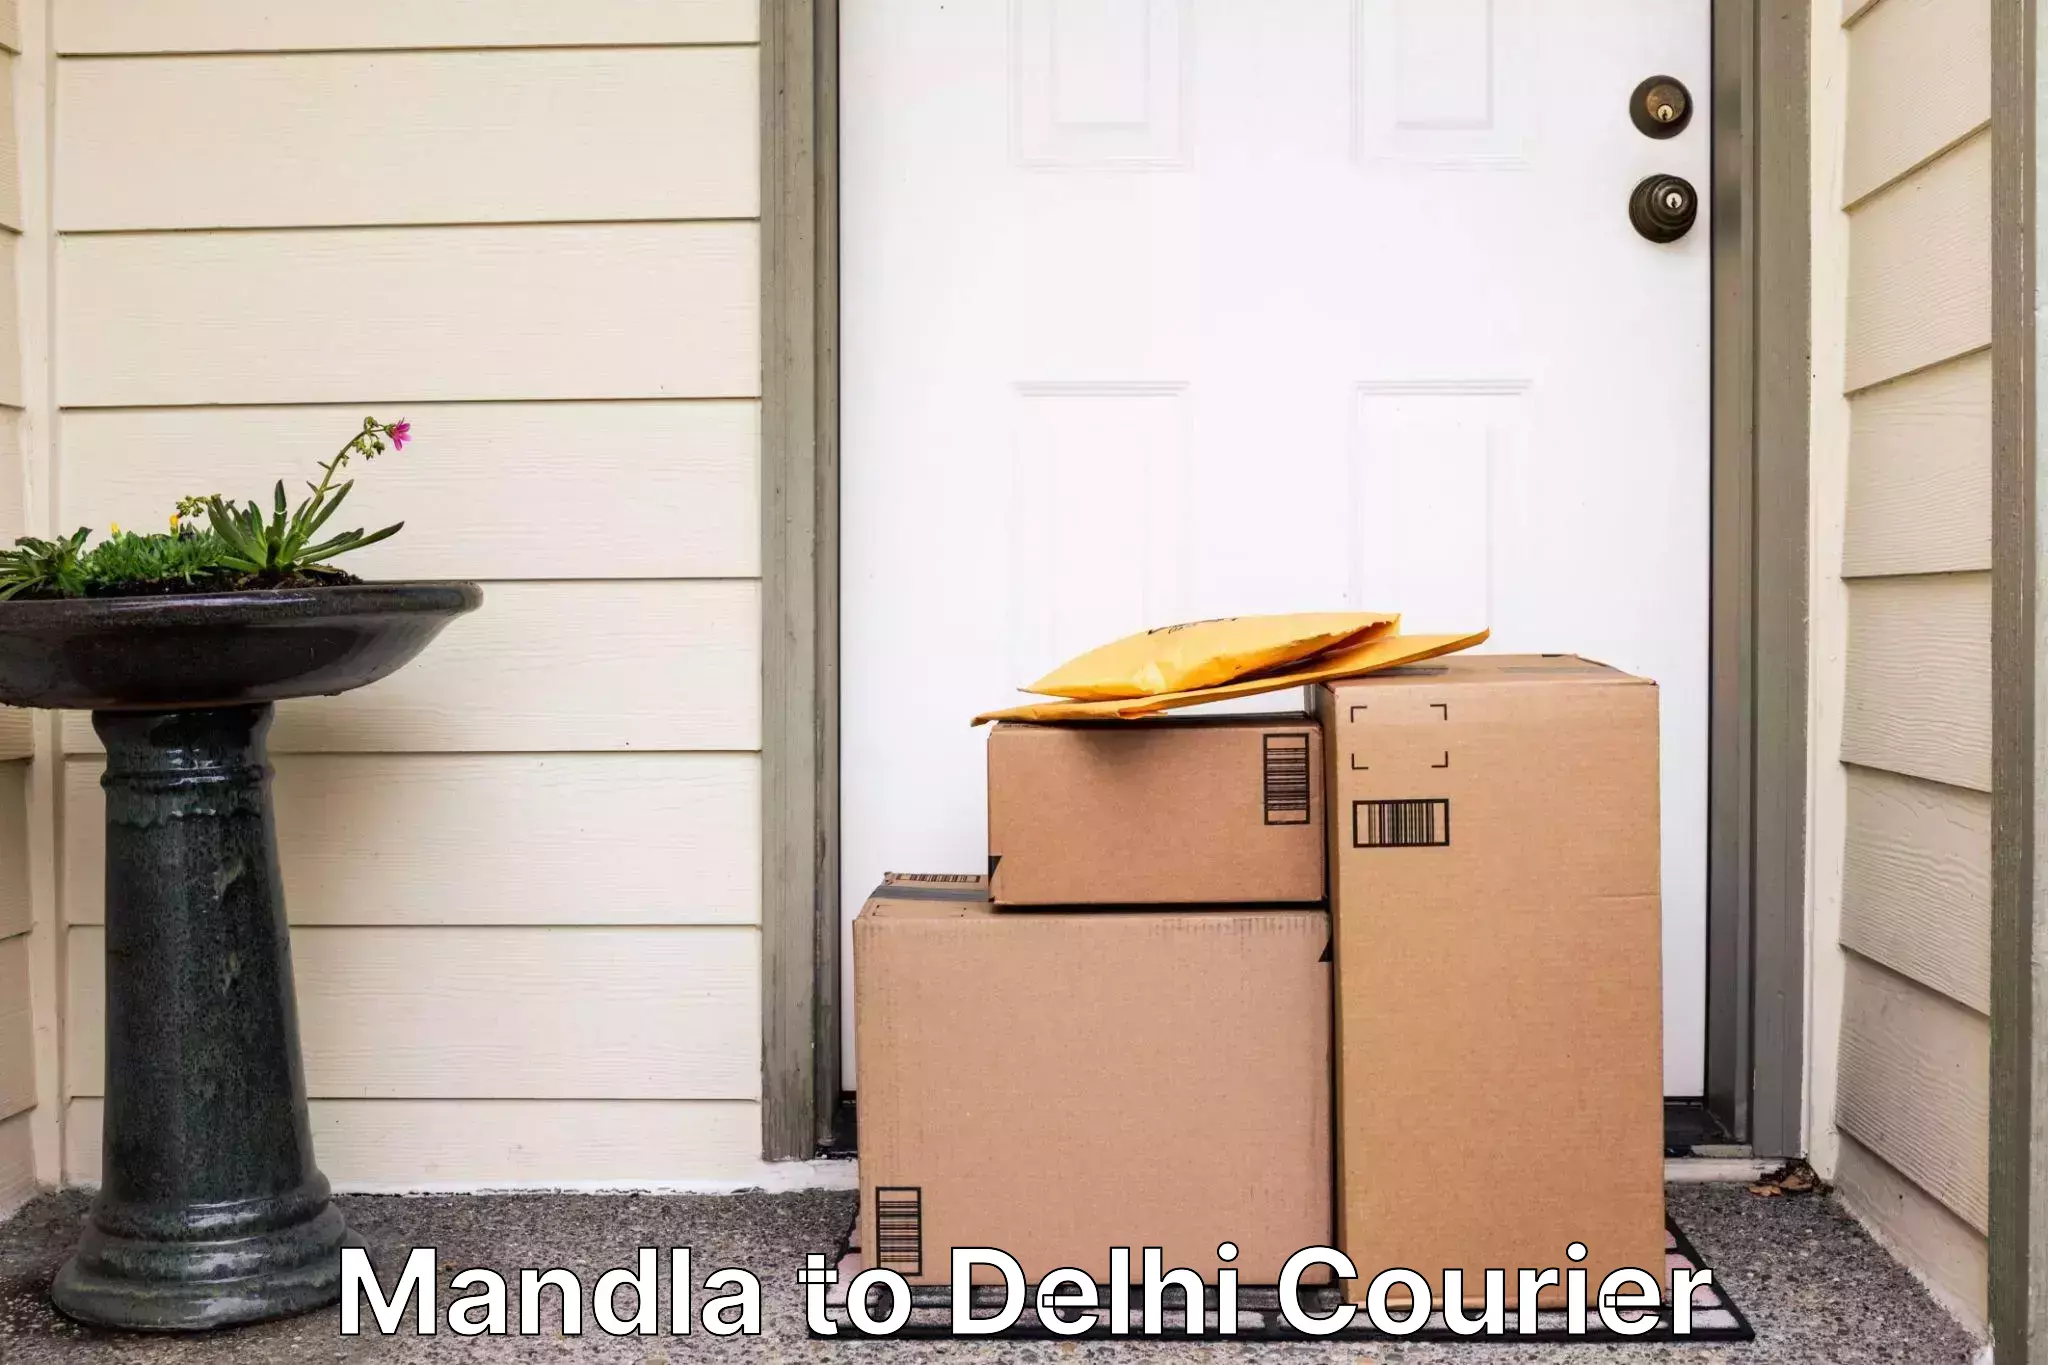 Fast delivery service Mandla to Delhi